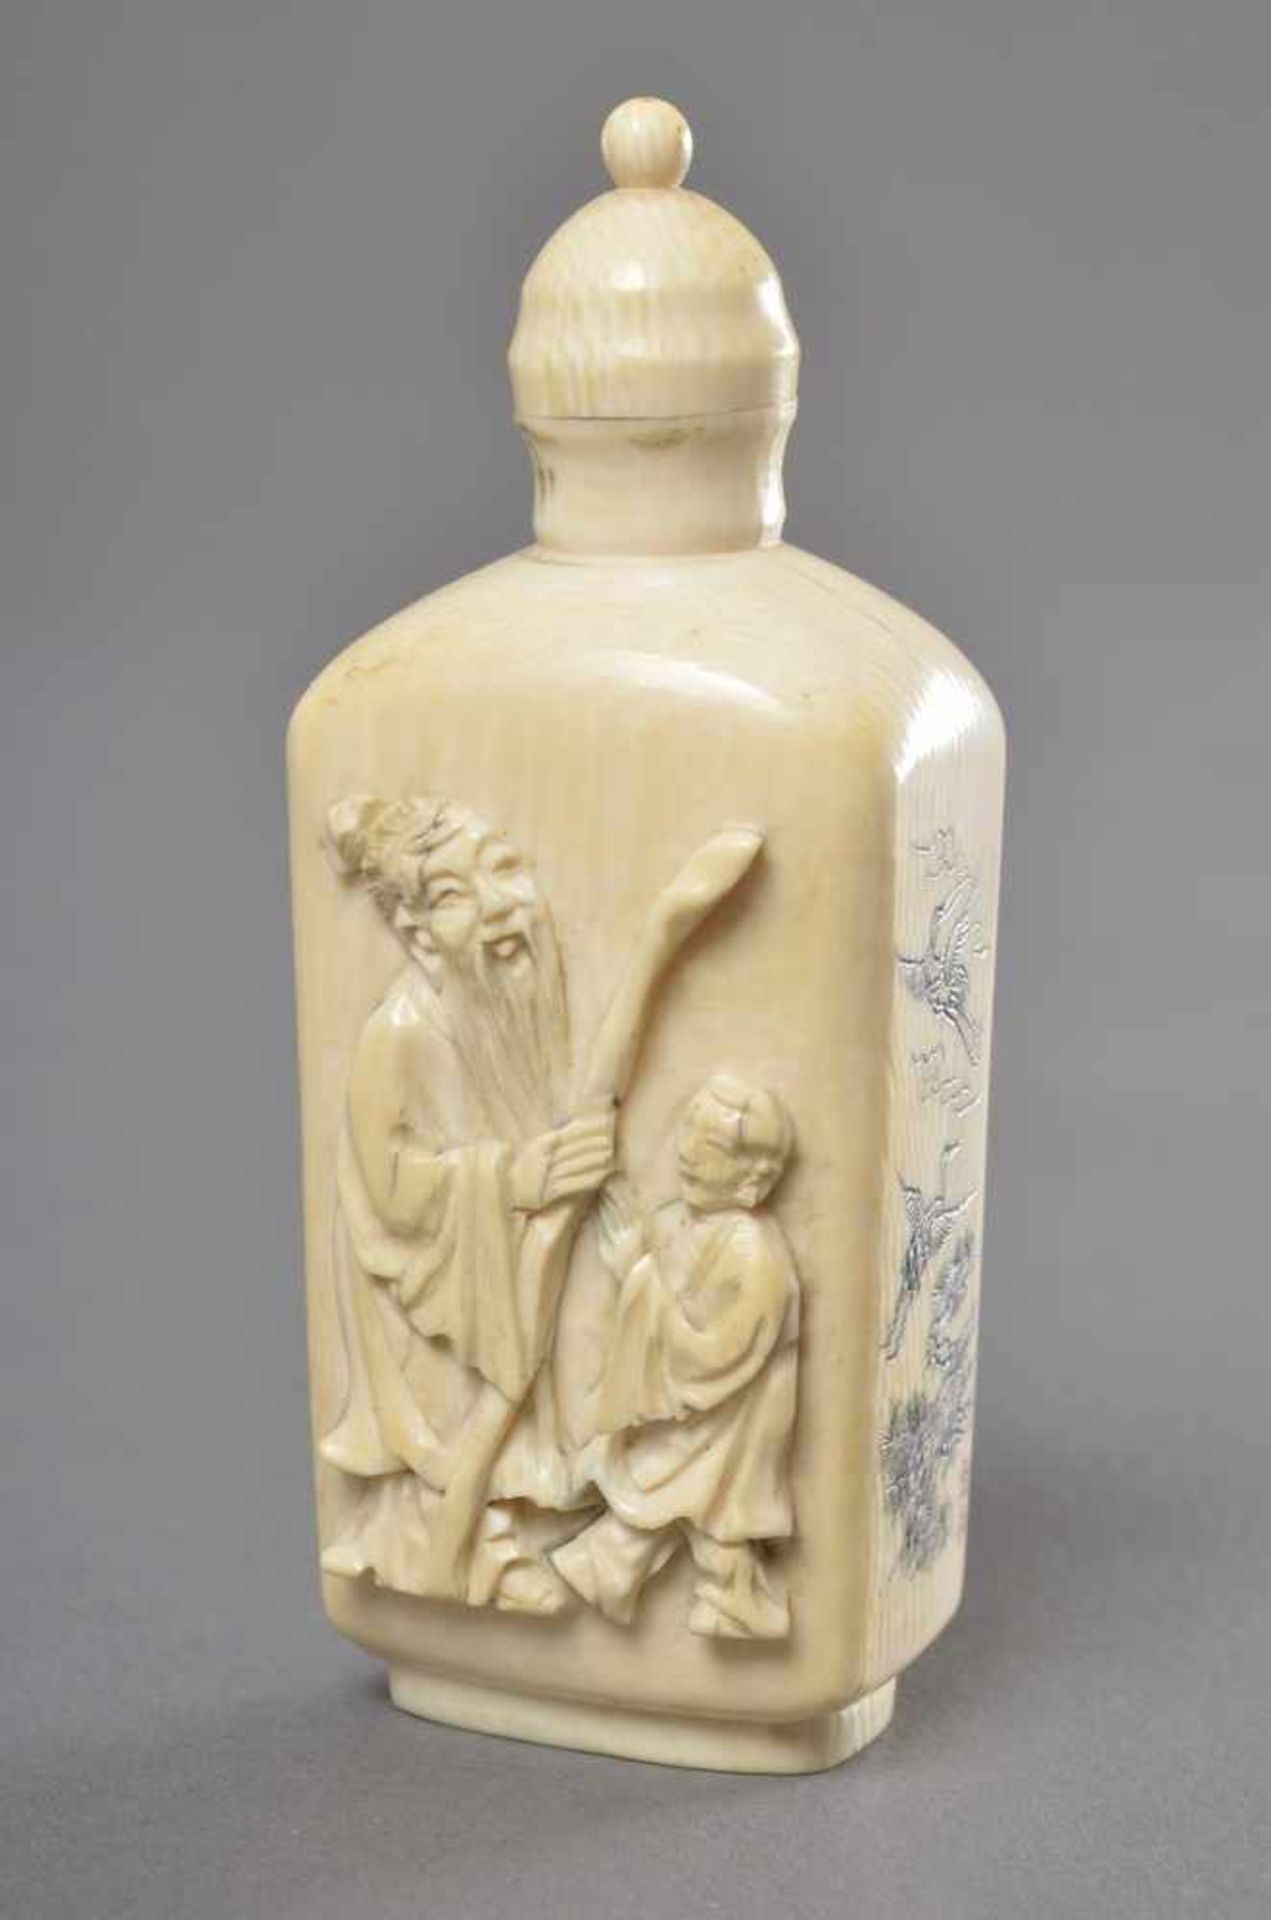 Rechteckige weiße Schnupftabakflasche aus indischem Elfenbein in Form einer Flasche mit Sepia